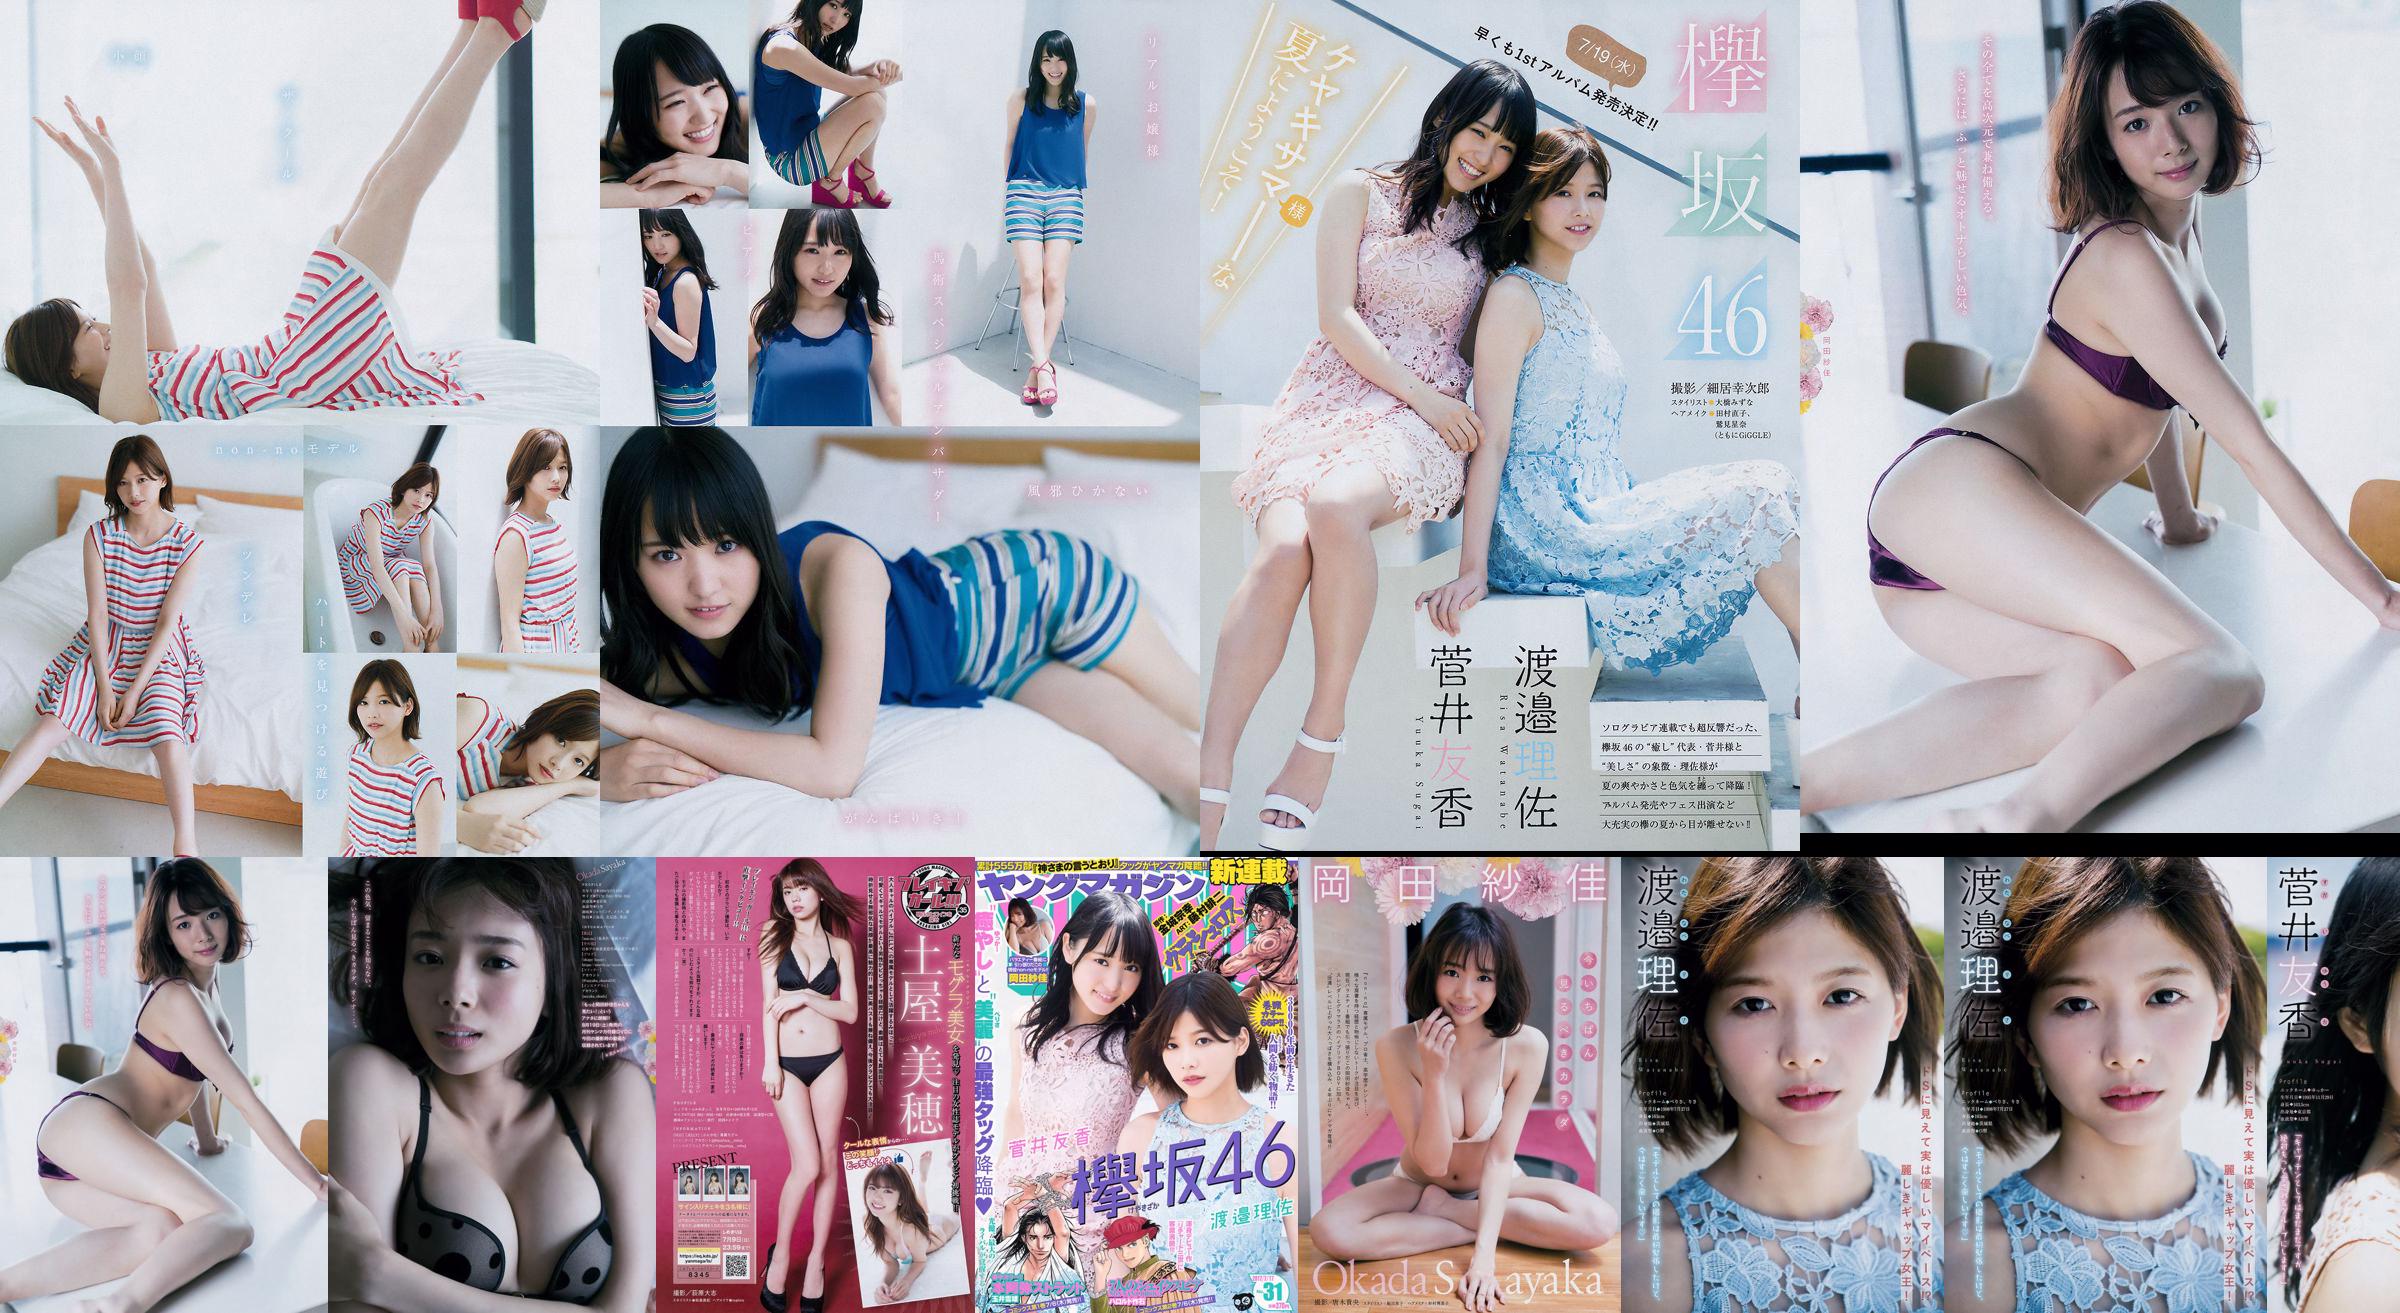 [Young Magazine] Watanabe Risa, Sugai Yuka, Okada Saika 2017 nr 31 Photo Magazine No.c6db00 Strona 1